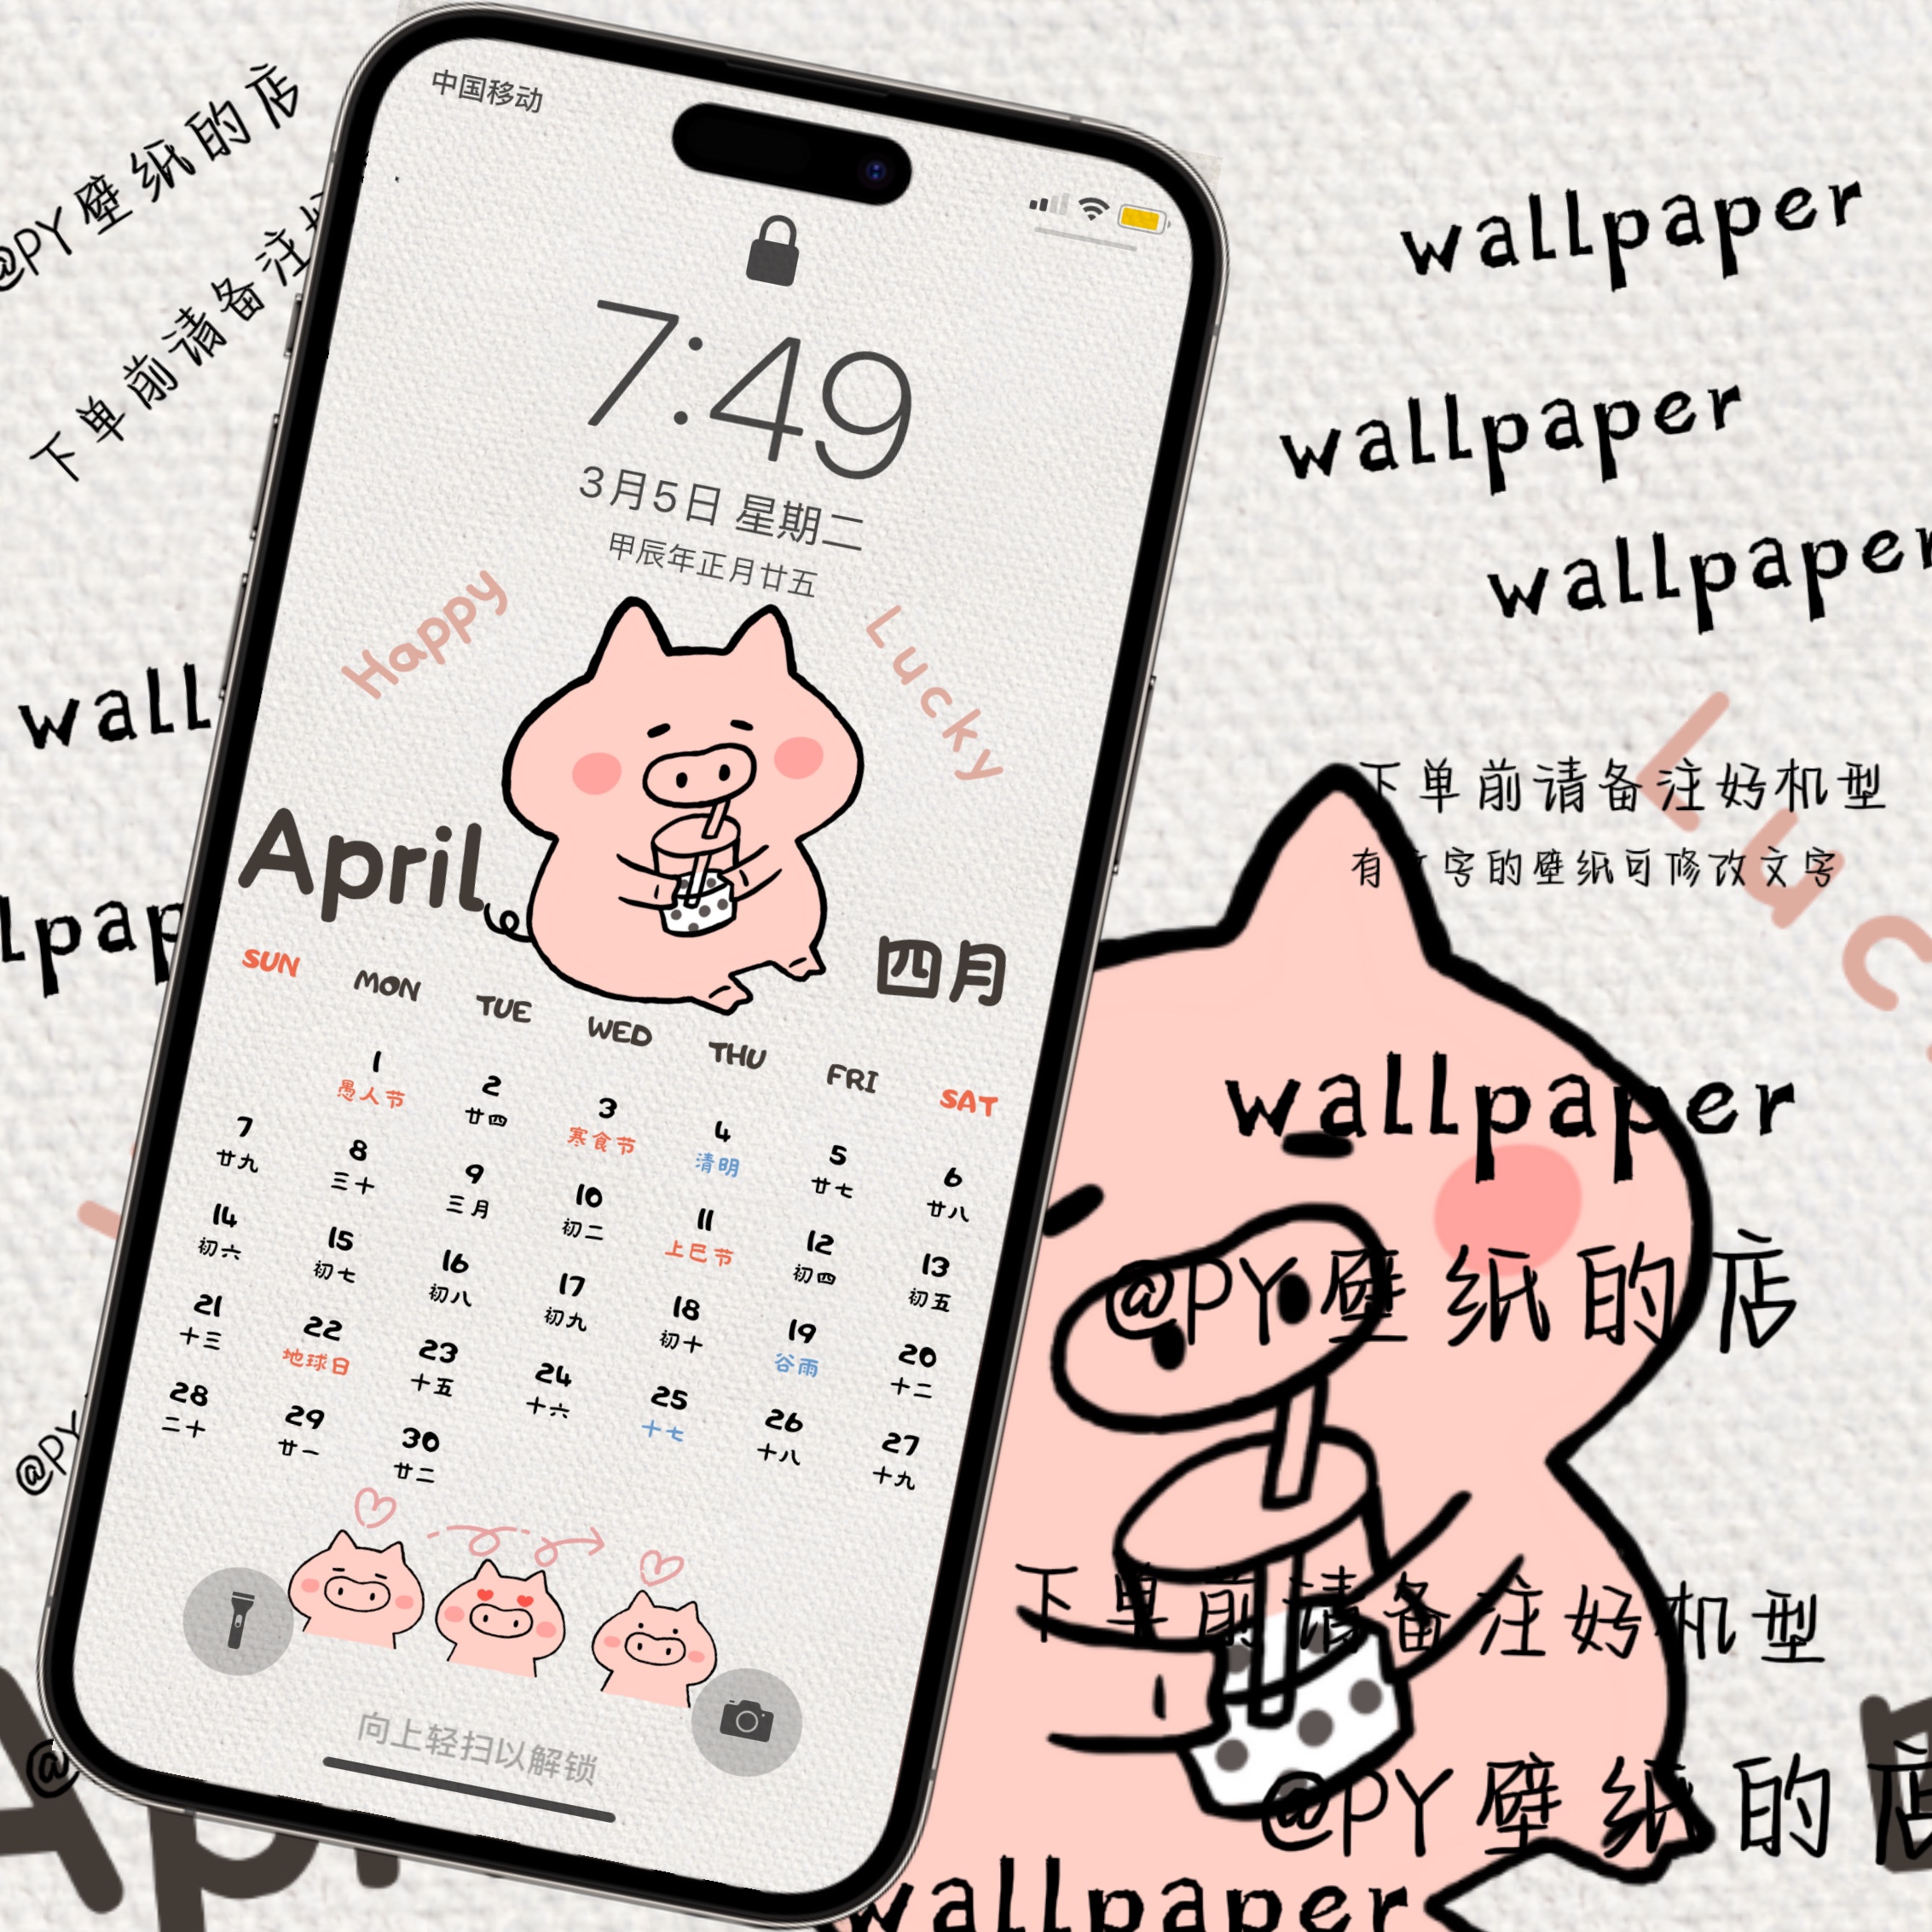 小肥猪4月日历月历手机壁纸|好运日历壁纸|海报素材|可爱日历壁纸